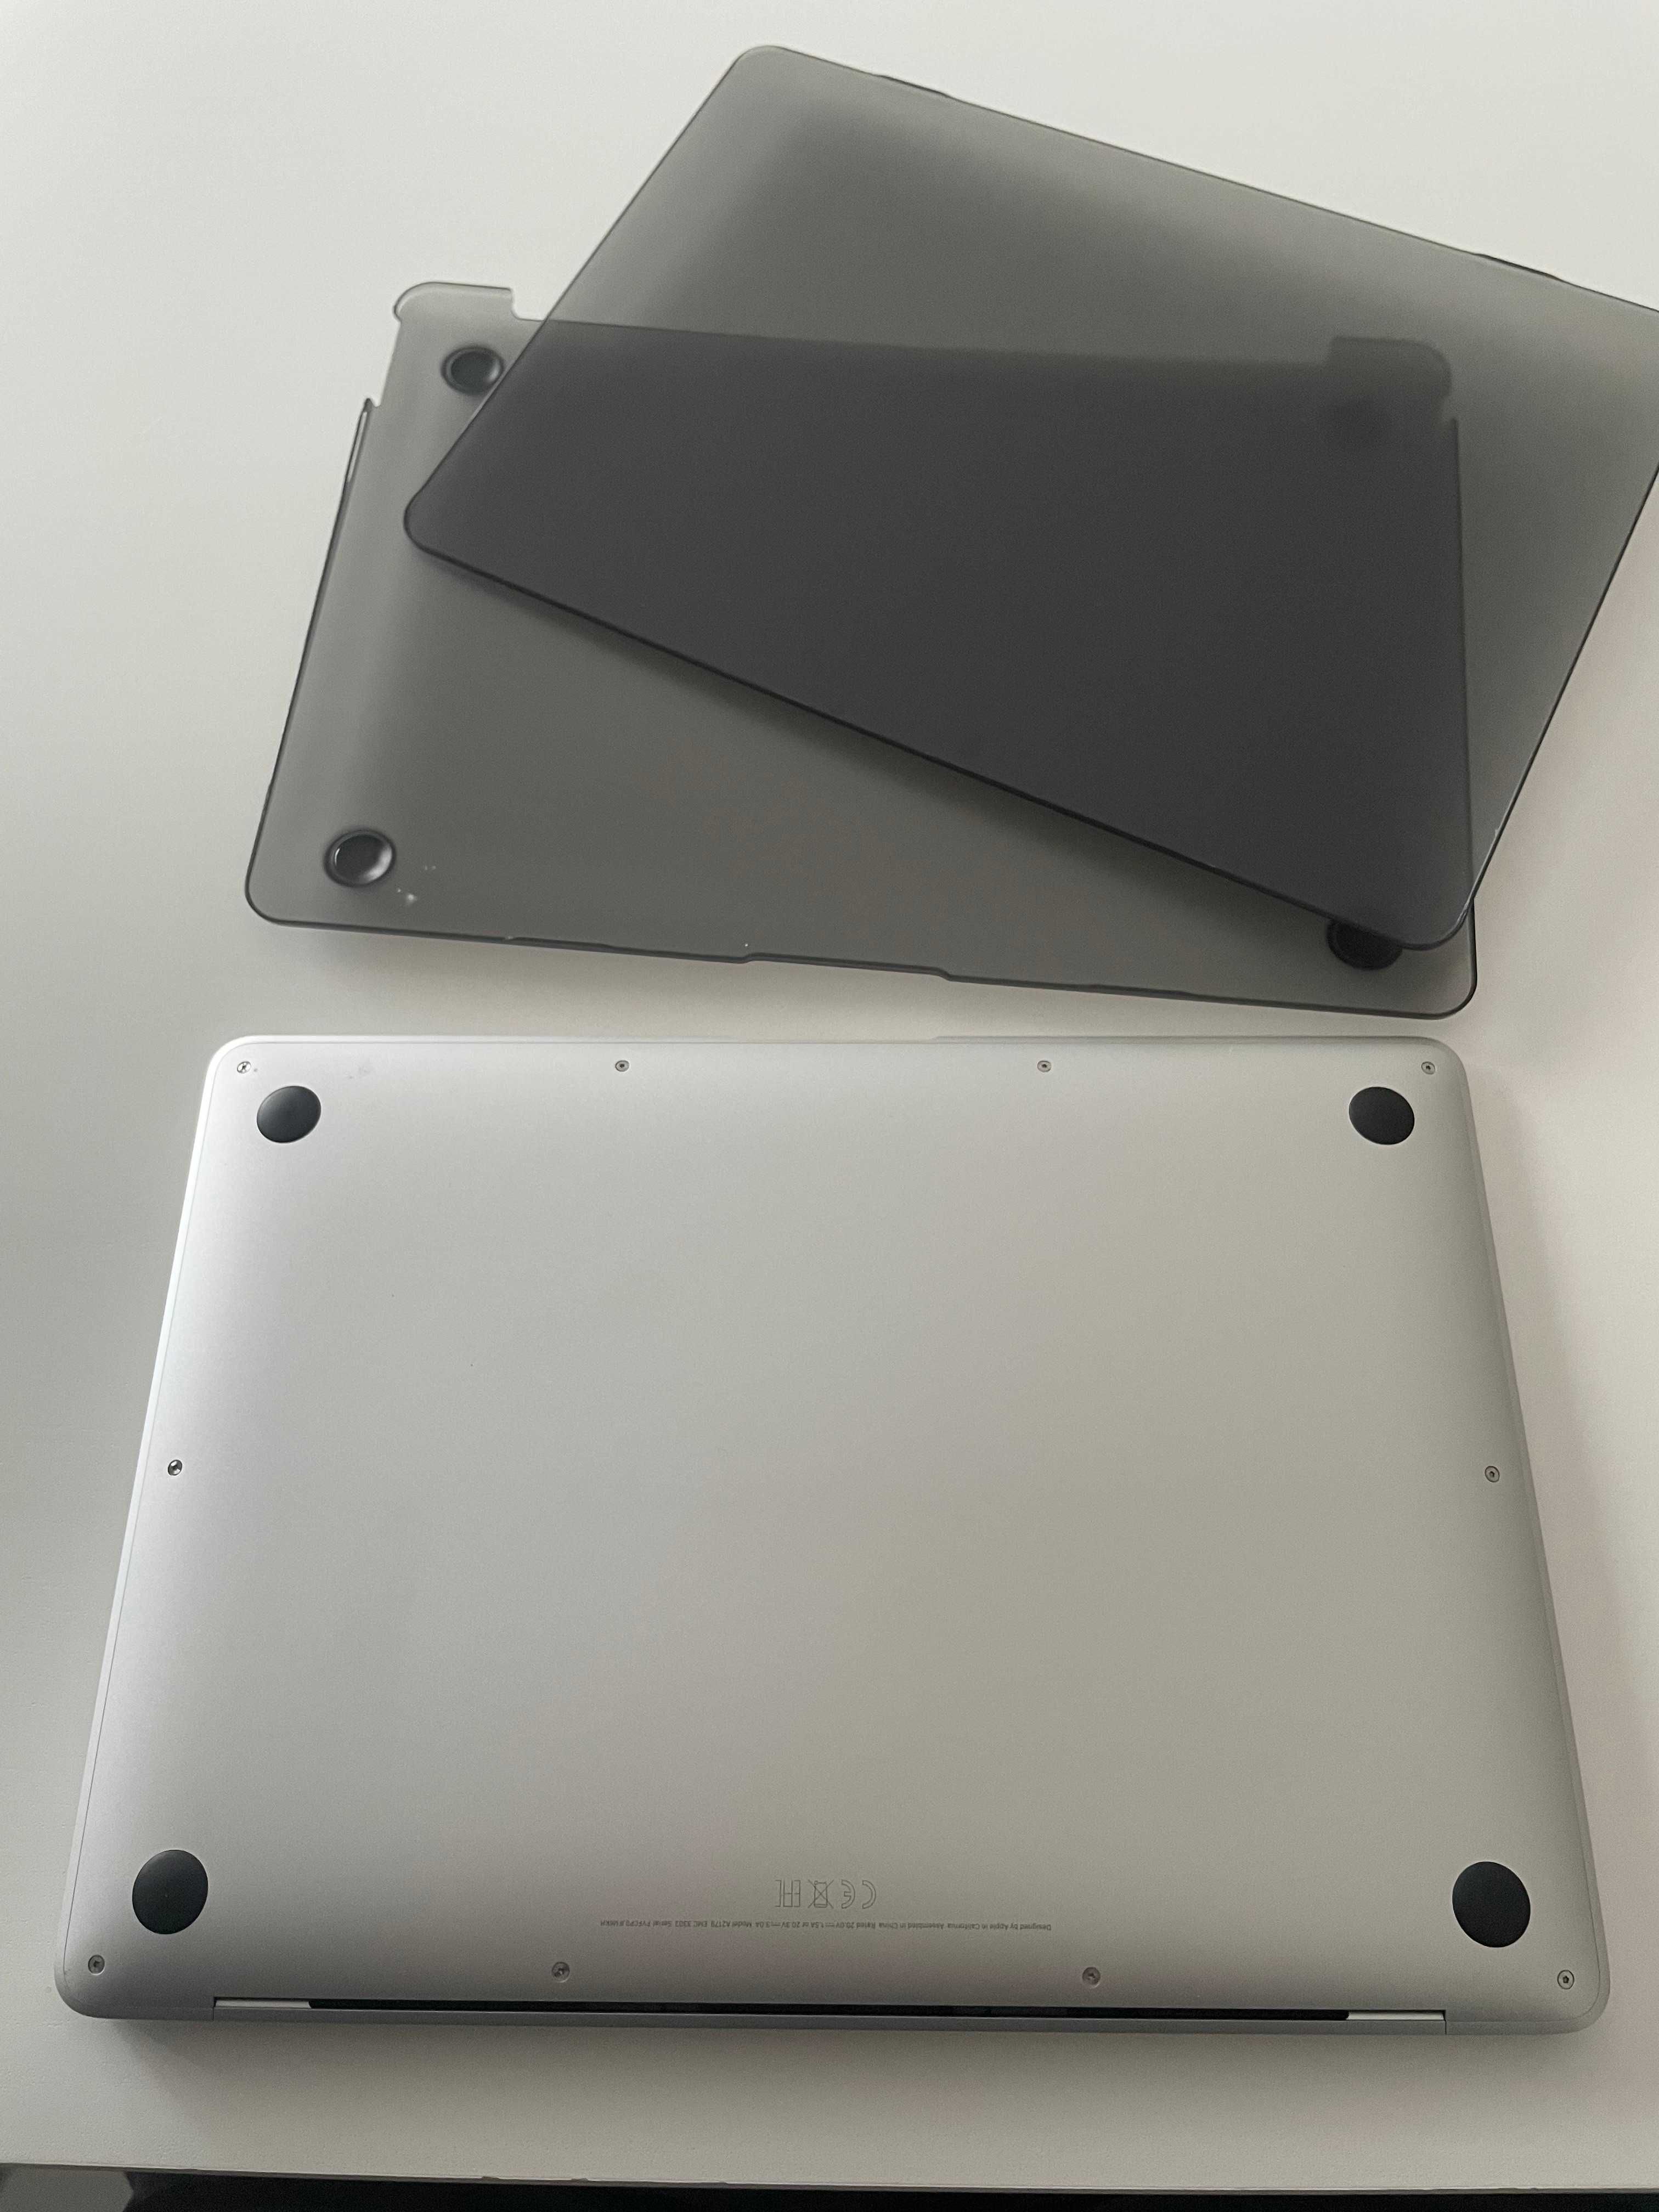 MacBook Air 13 (2020) - Como Novo!